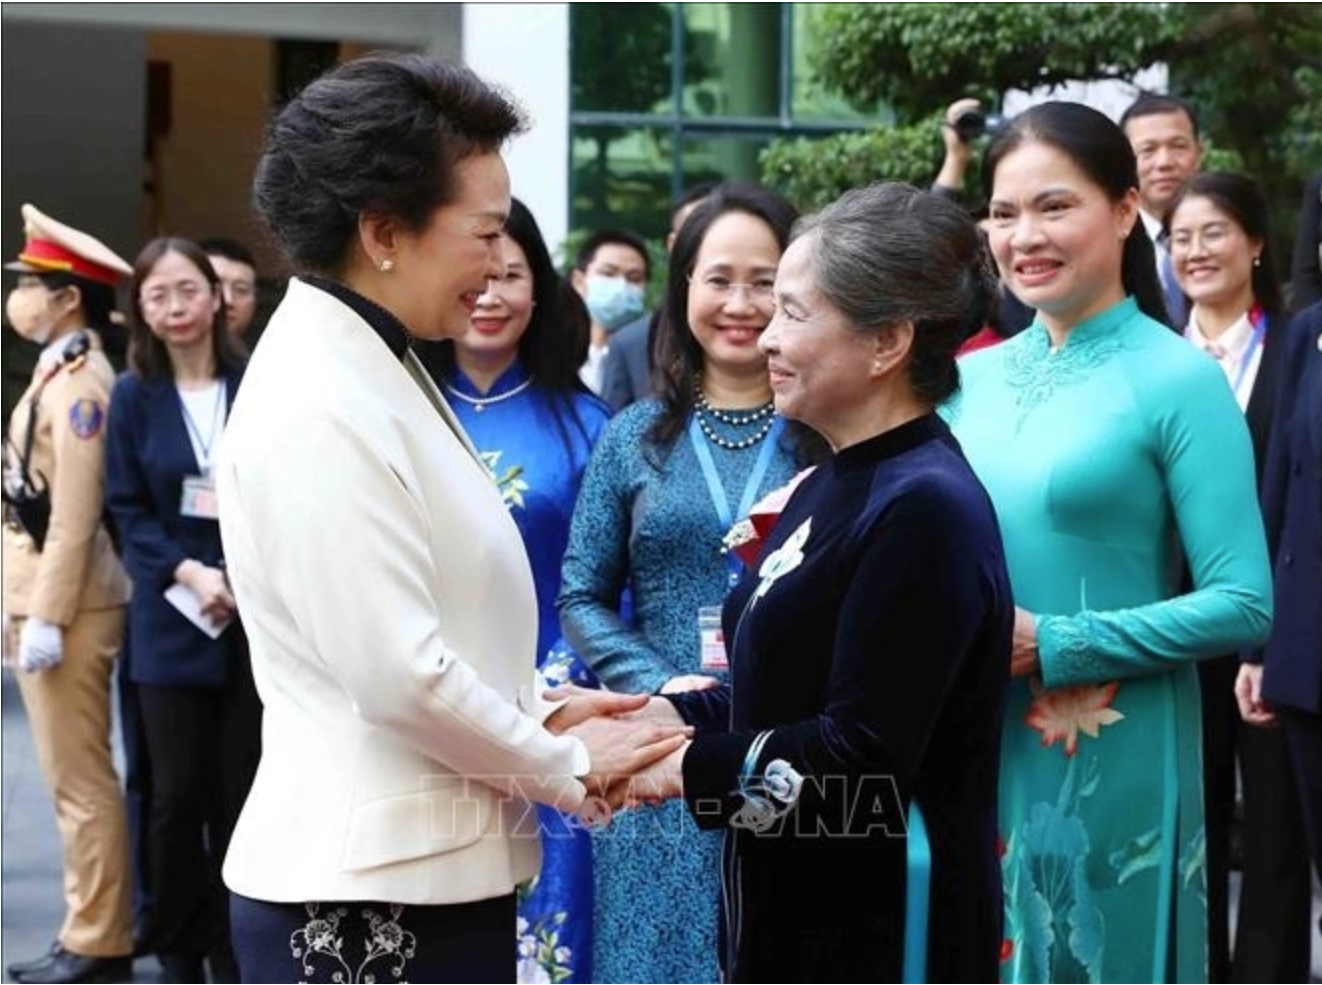 Phu nhân Tổng Bí thư Nguyễn Phú Trọng đưa Phu nhân Bành Lệ Viên thăm bảo tàng ở Hà Nội - Ảnh 2.